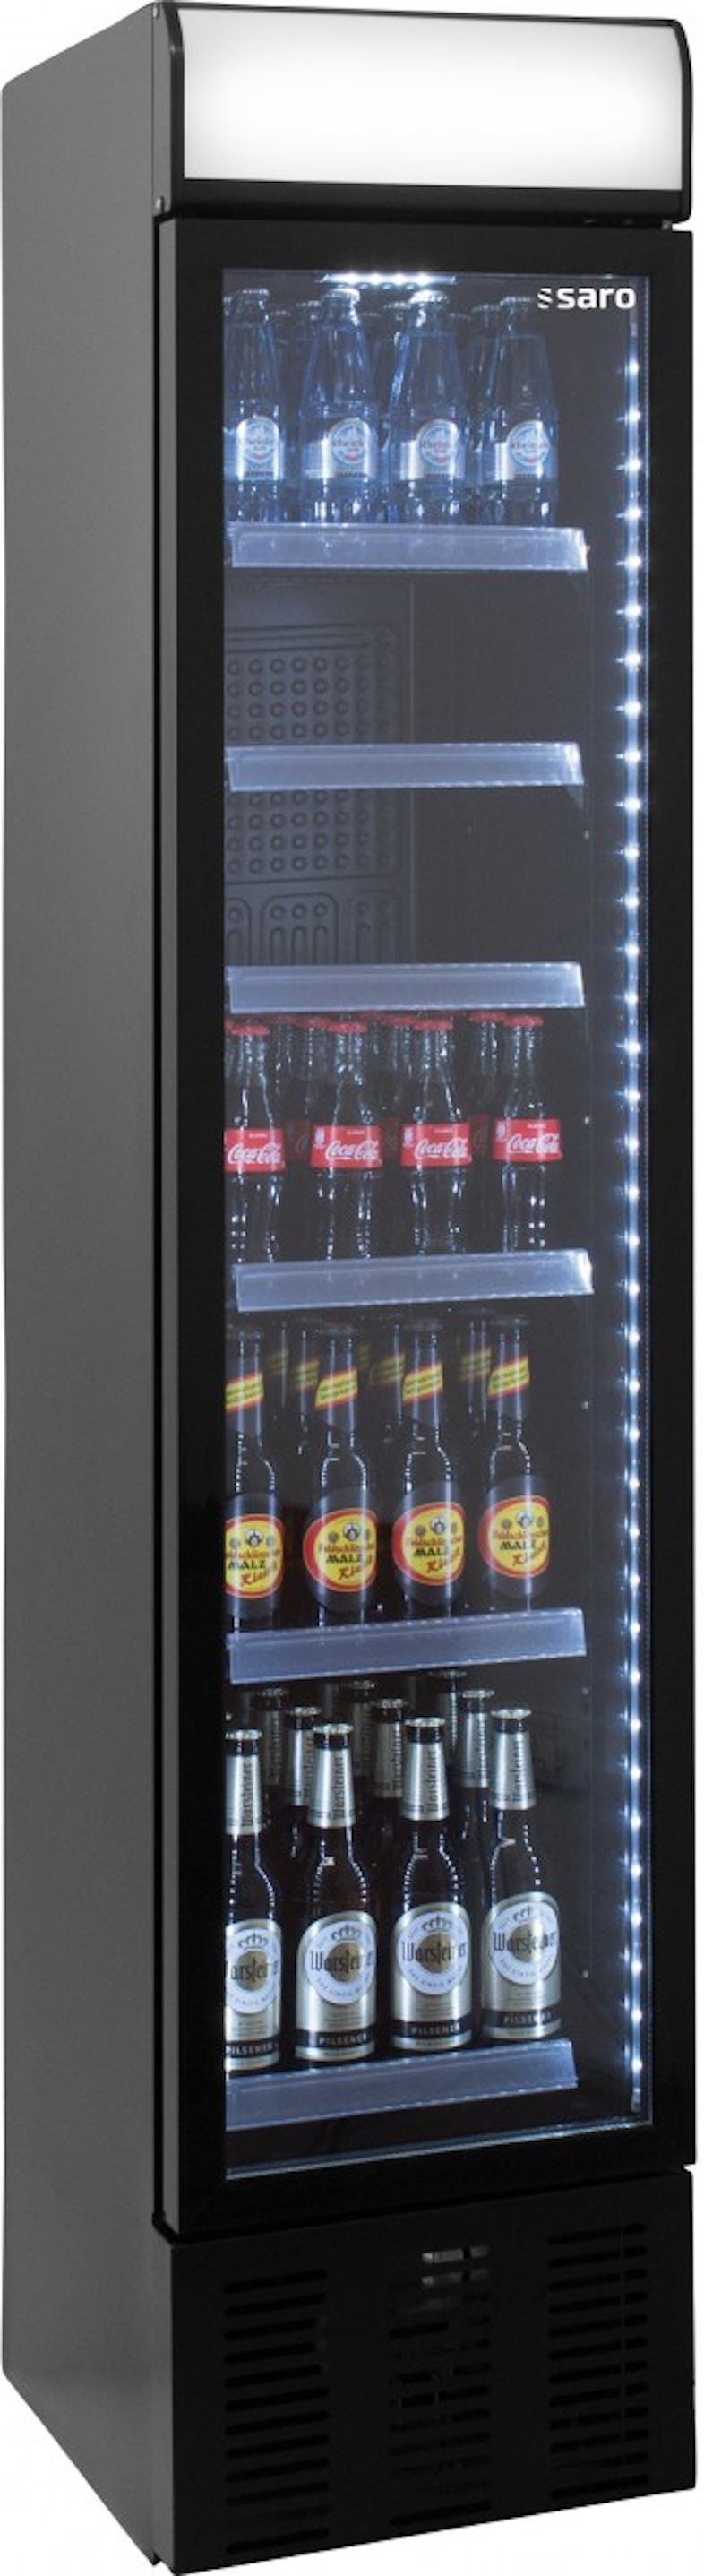 SARO Getränkekühlschrank mit Glastür Modell GTK 310